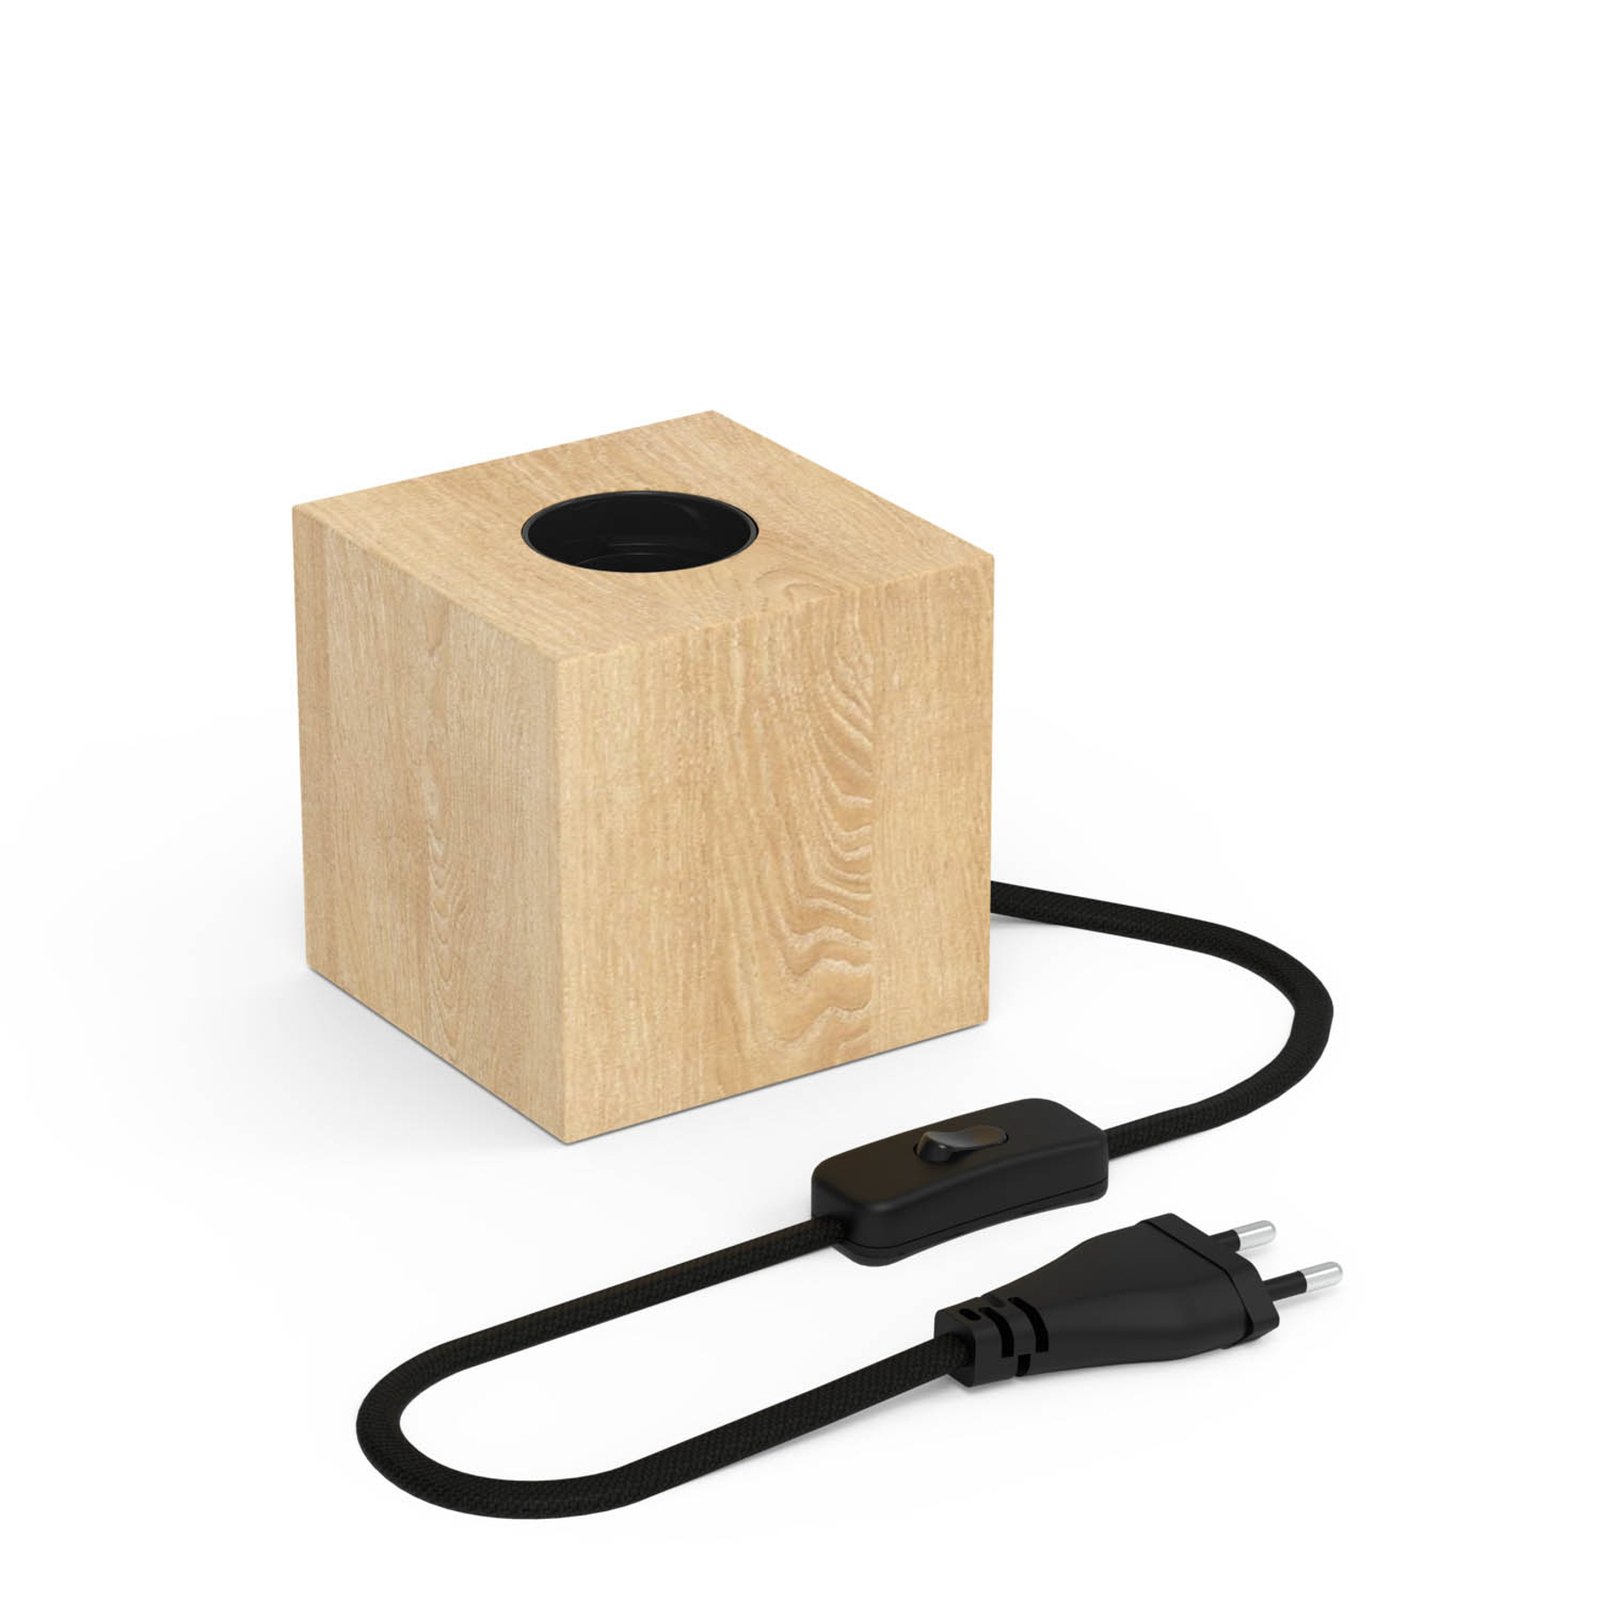 Calex asztali világítás kocka formában, fa furnér